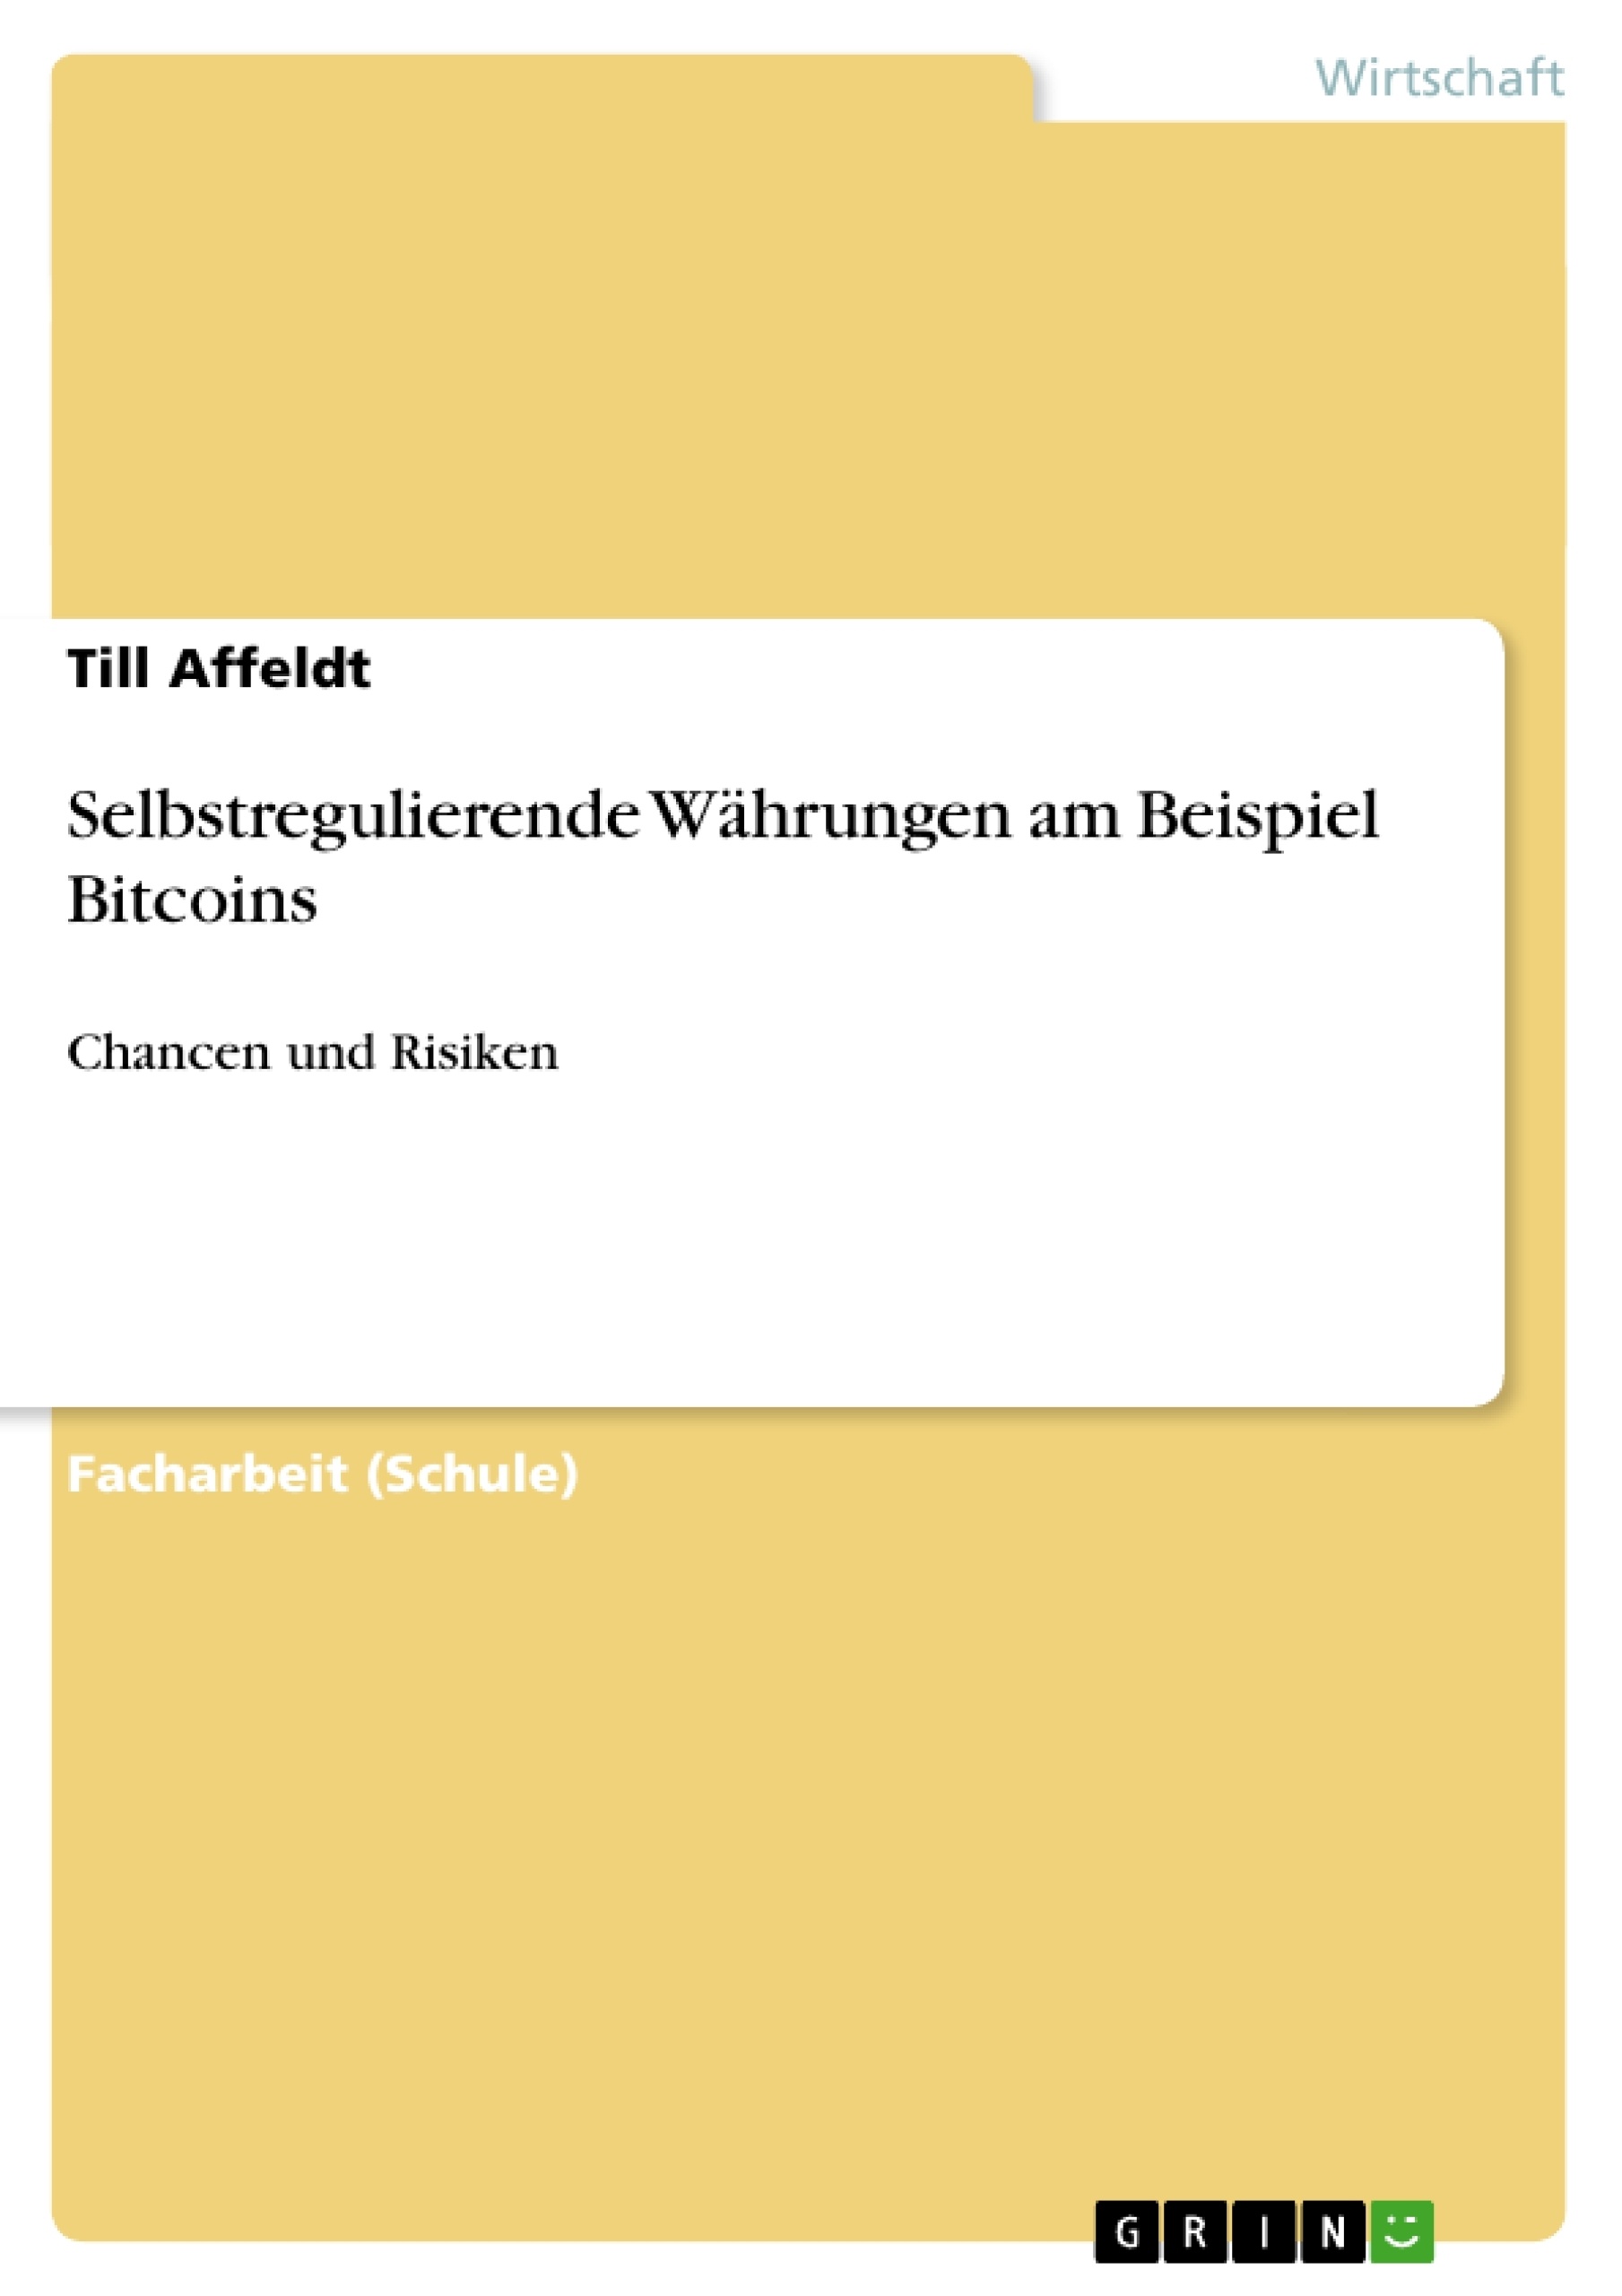 Titre: Selbstregulierende Währungen am Beispiel Bitcoins